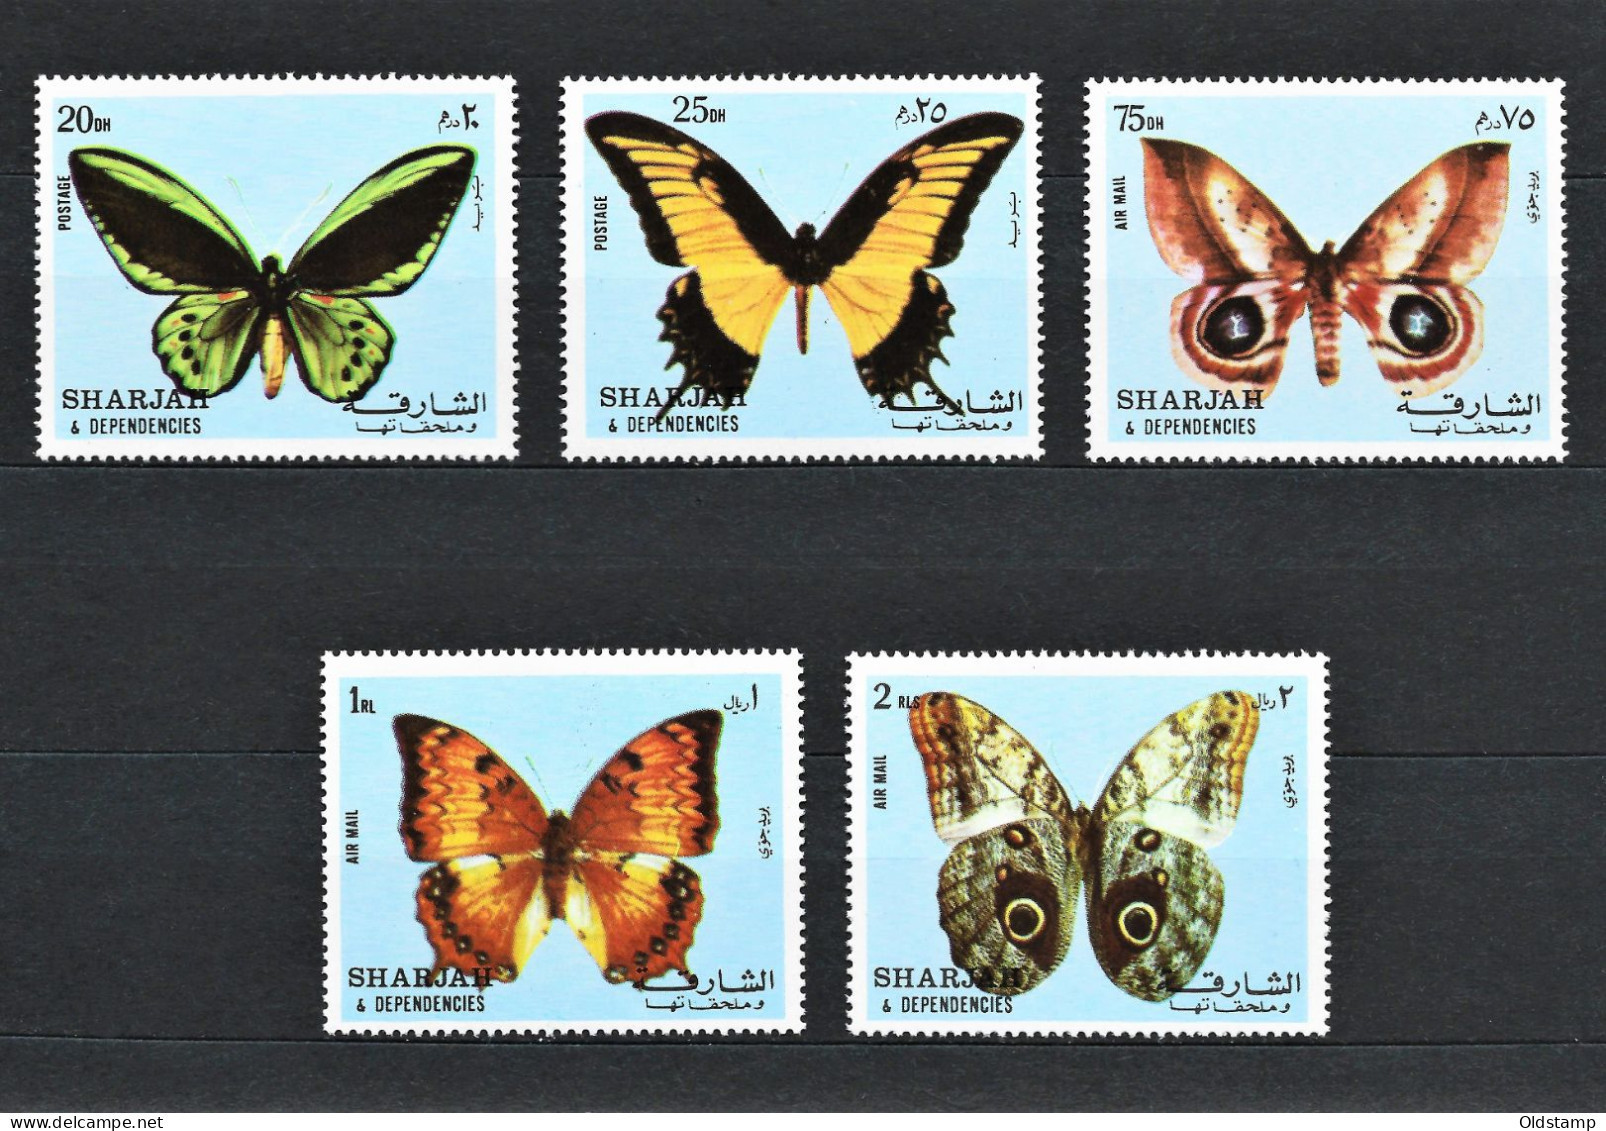 Sharjah 1972 Butterflies Insects Moth VLINDERS MARIPOSAS Fauna Wild Arabian UAE MNH Stamps Serie Full Set Mi.# 1018-1022 - Vlinders